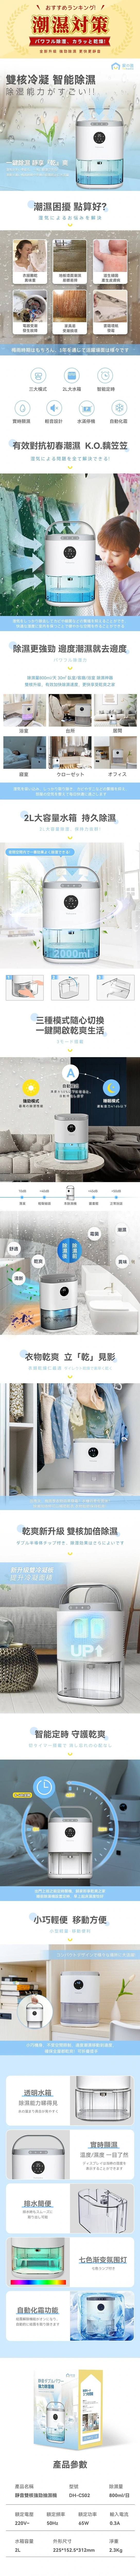 Jiayi - Japanese Yohome silent dual-core powerful dehumidifier｜Smart dehumidification 